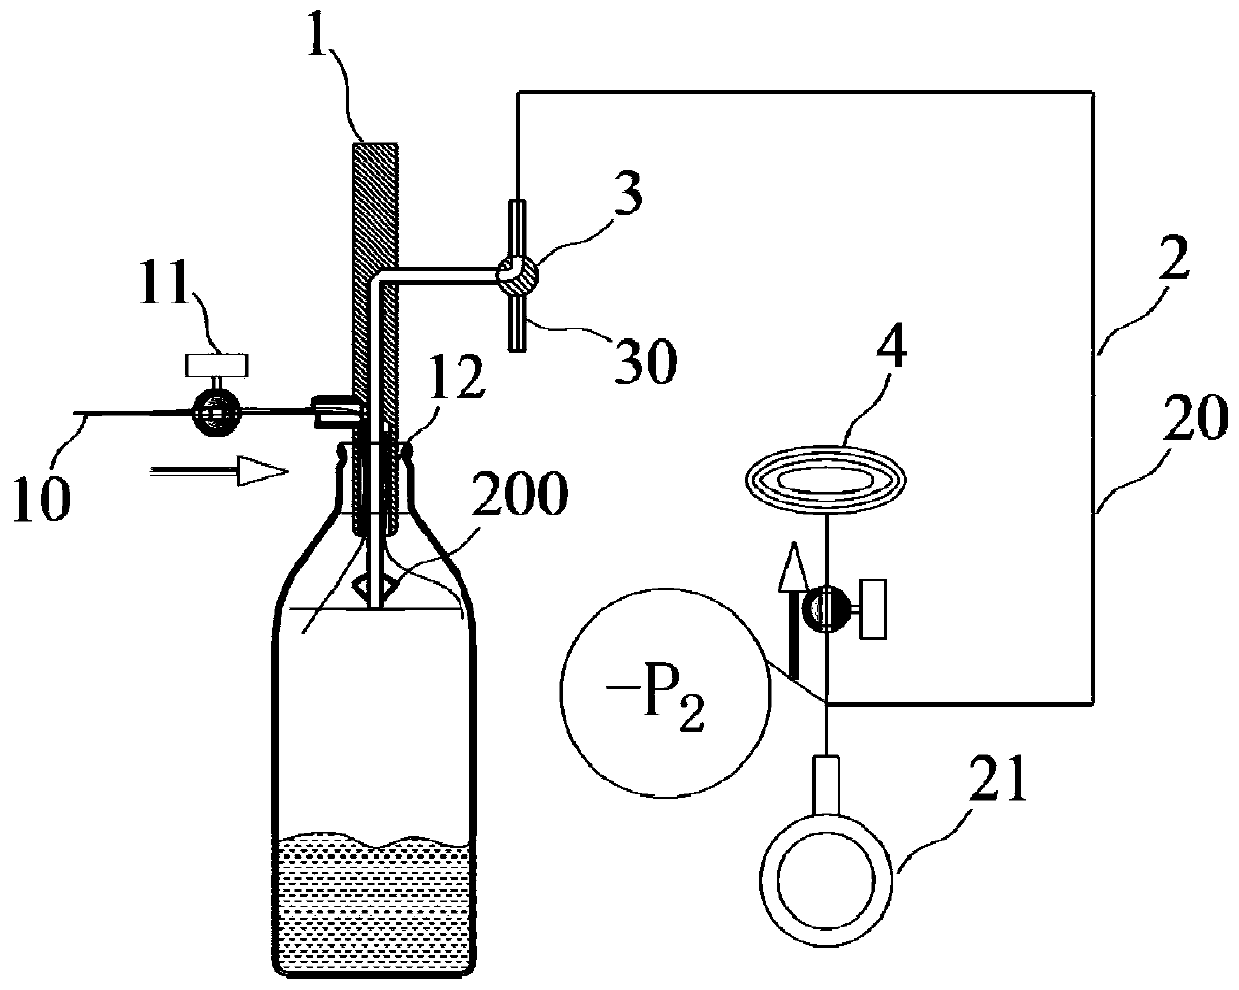 Negative pressure method non-contact liquid filling liquid level control method